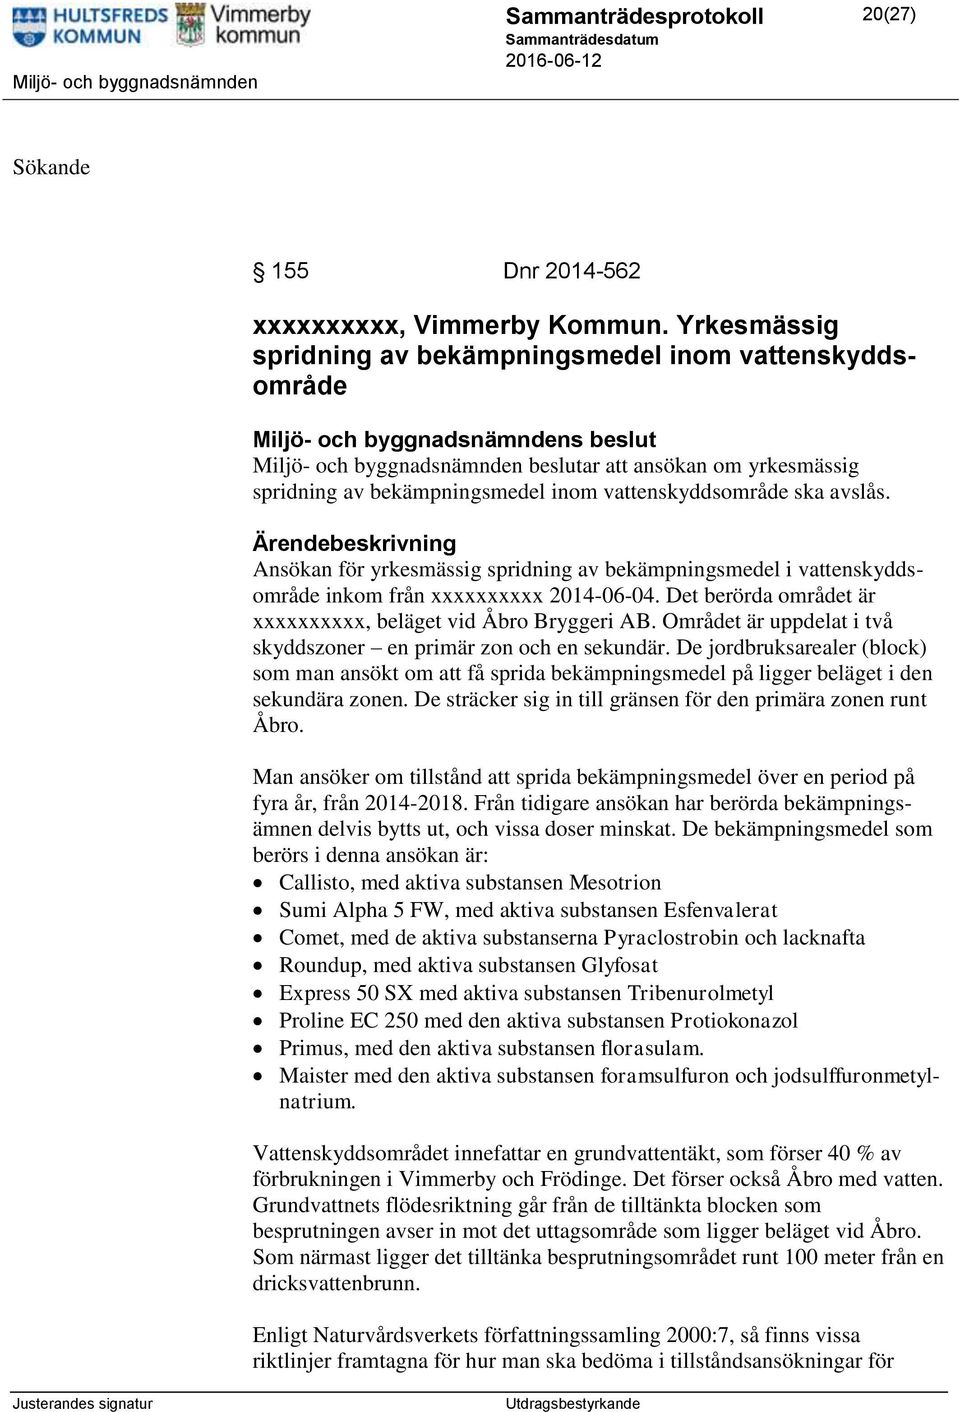 Ansökan för yrkesmässig spridning av bekämpningsmedel i vattenskyddsområde inkom från xxxxxxxxxx 2014-06-04. Det berörda området är xxxxxxxxxx, beläget vid Åbro Bryggeri AB.